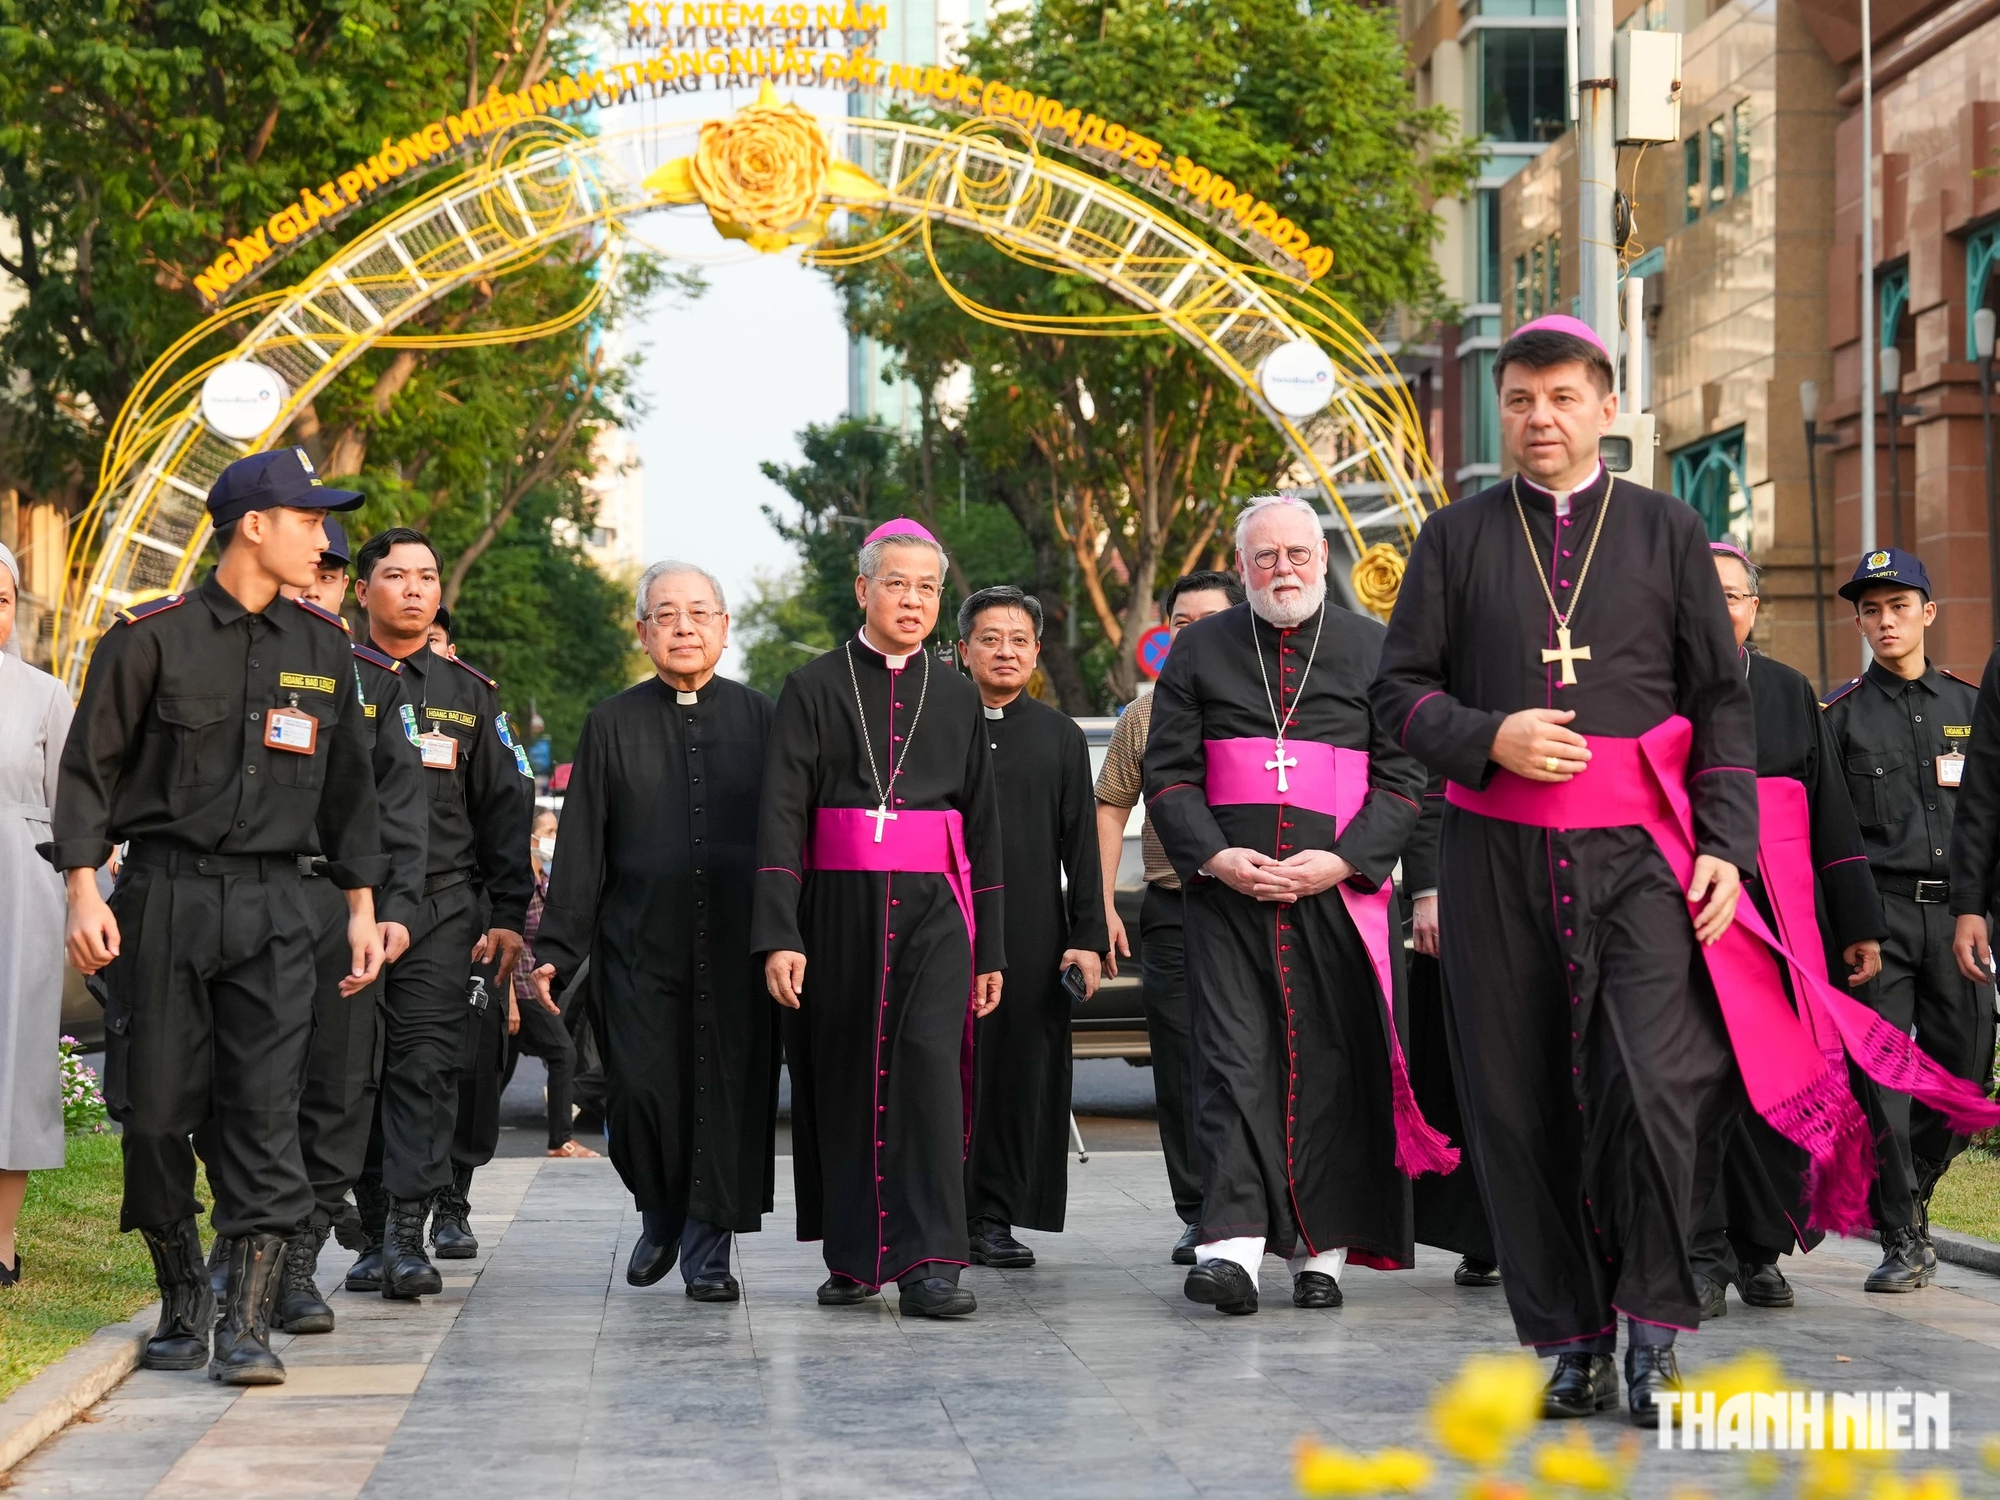 Tổng giám mục Giuse Nguyễn Năng cho biết chuyến thăm của Ngoại trưởng Tòa Thánh đến Việt Nam đánh dấu bước phát triển quan trọng của mối quan hệ ngoại giao giữa Việt Nam và Tòa Thánh